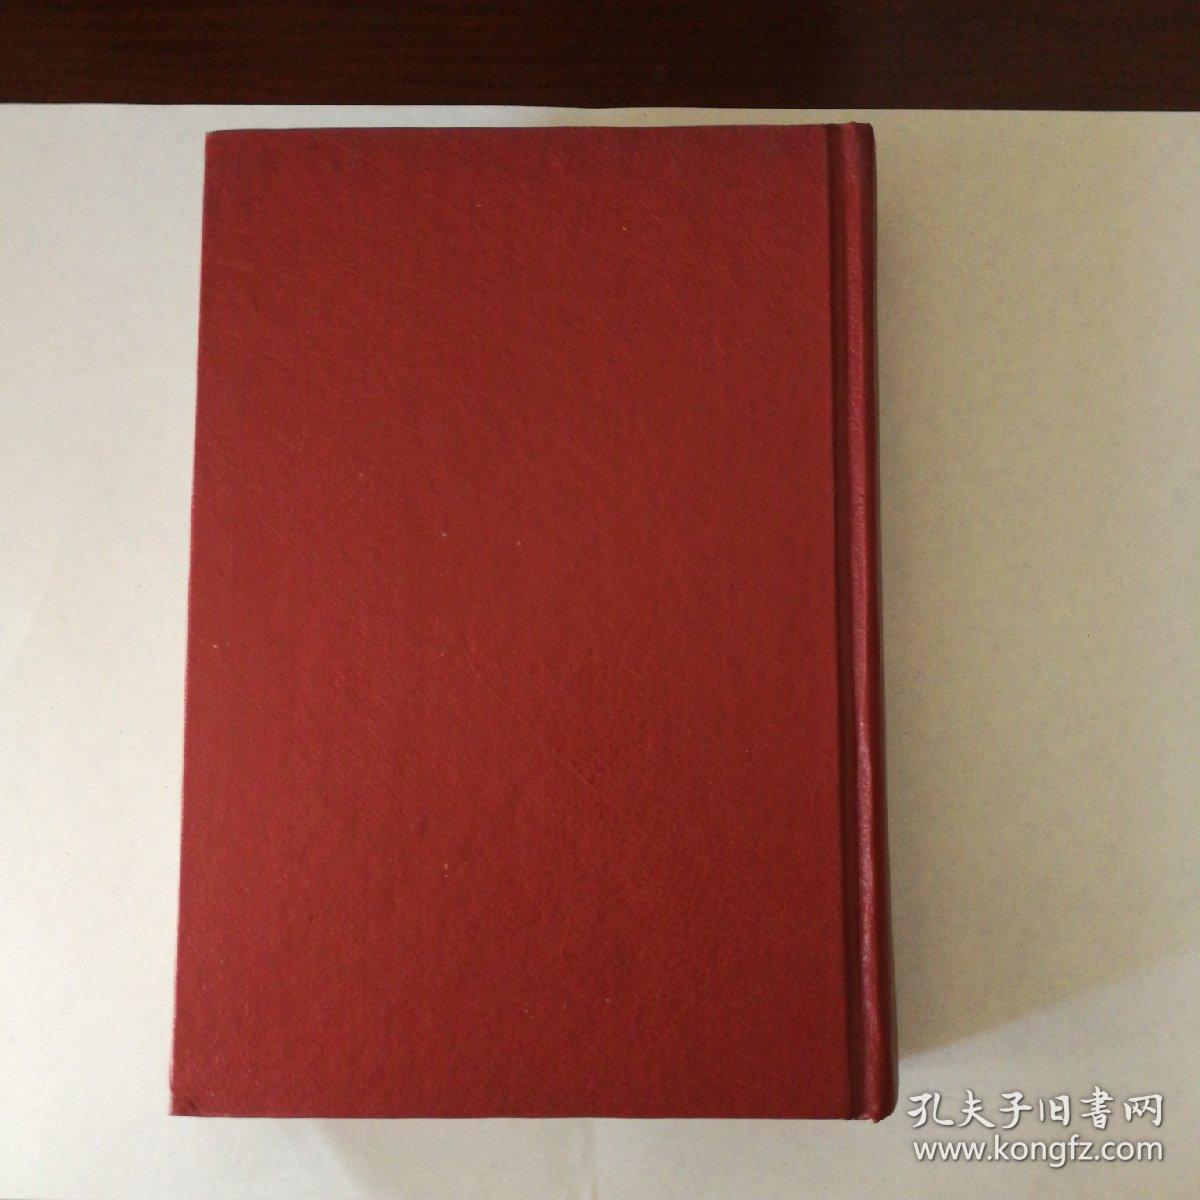 二十世纪中华文学辞典